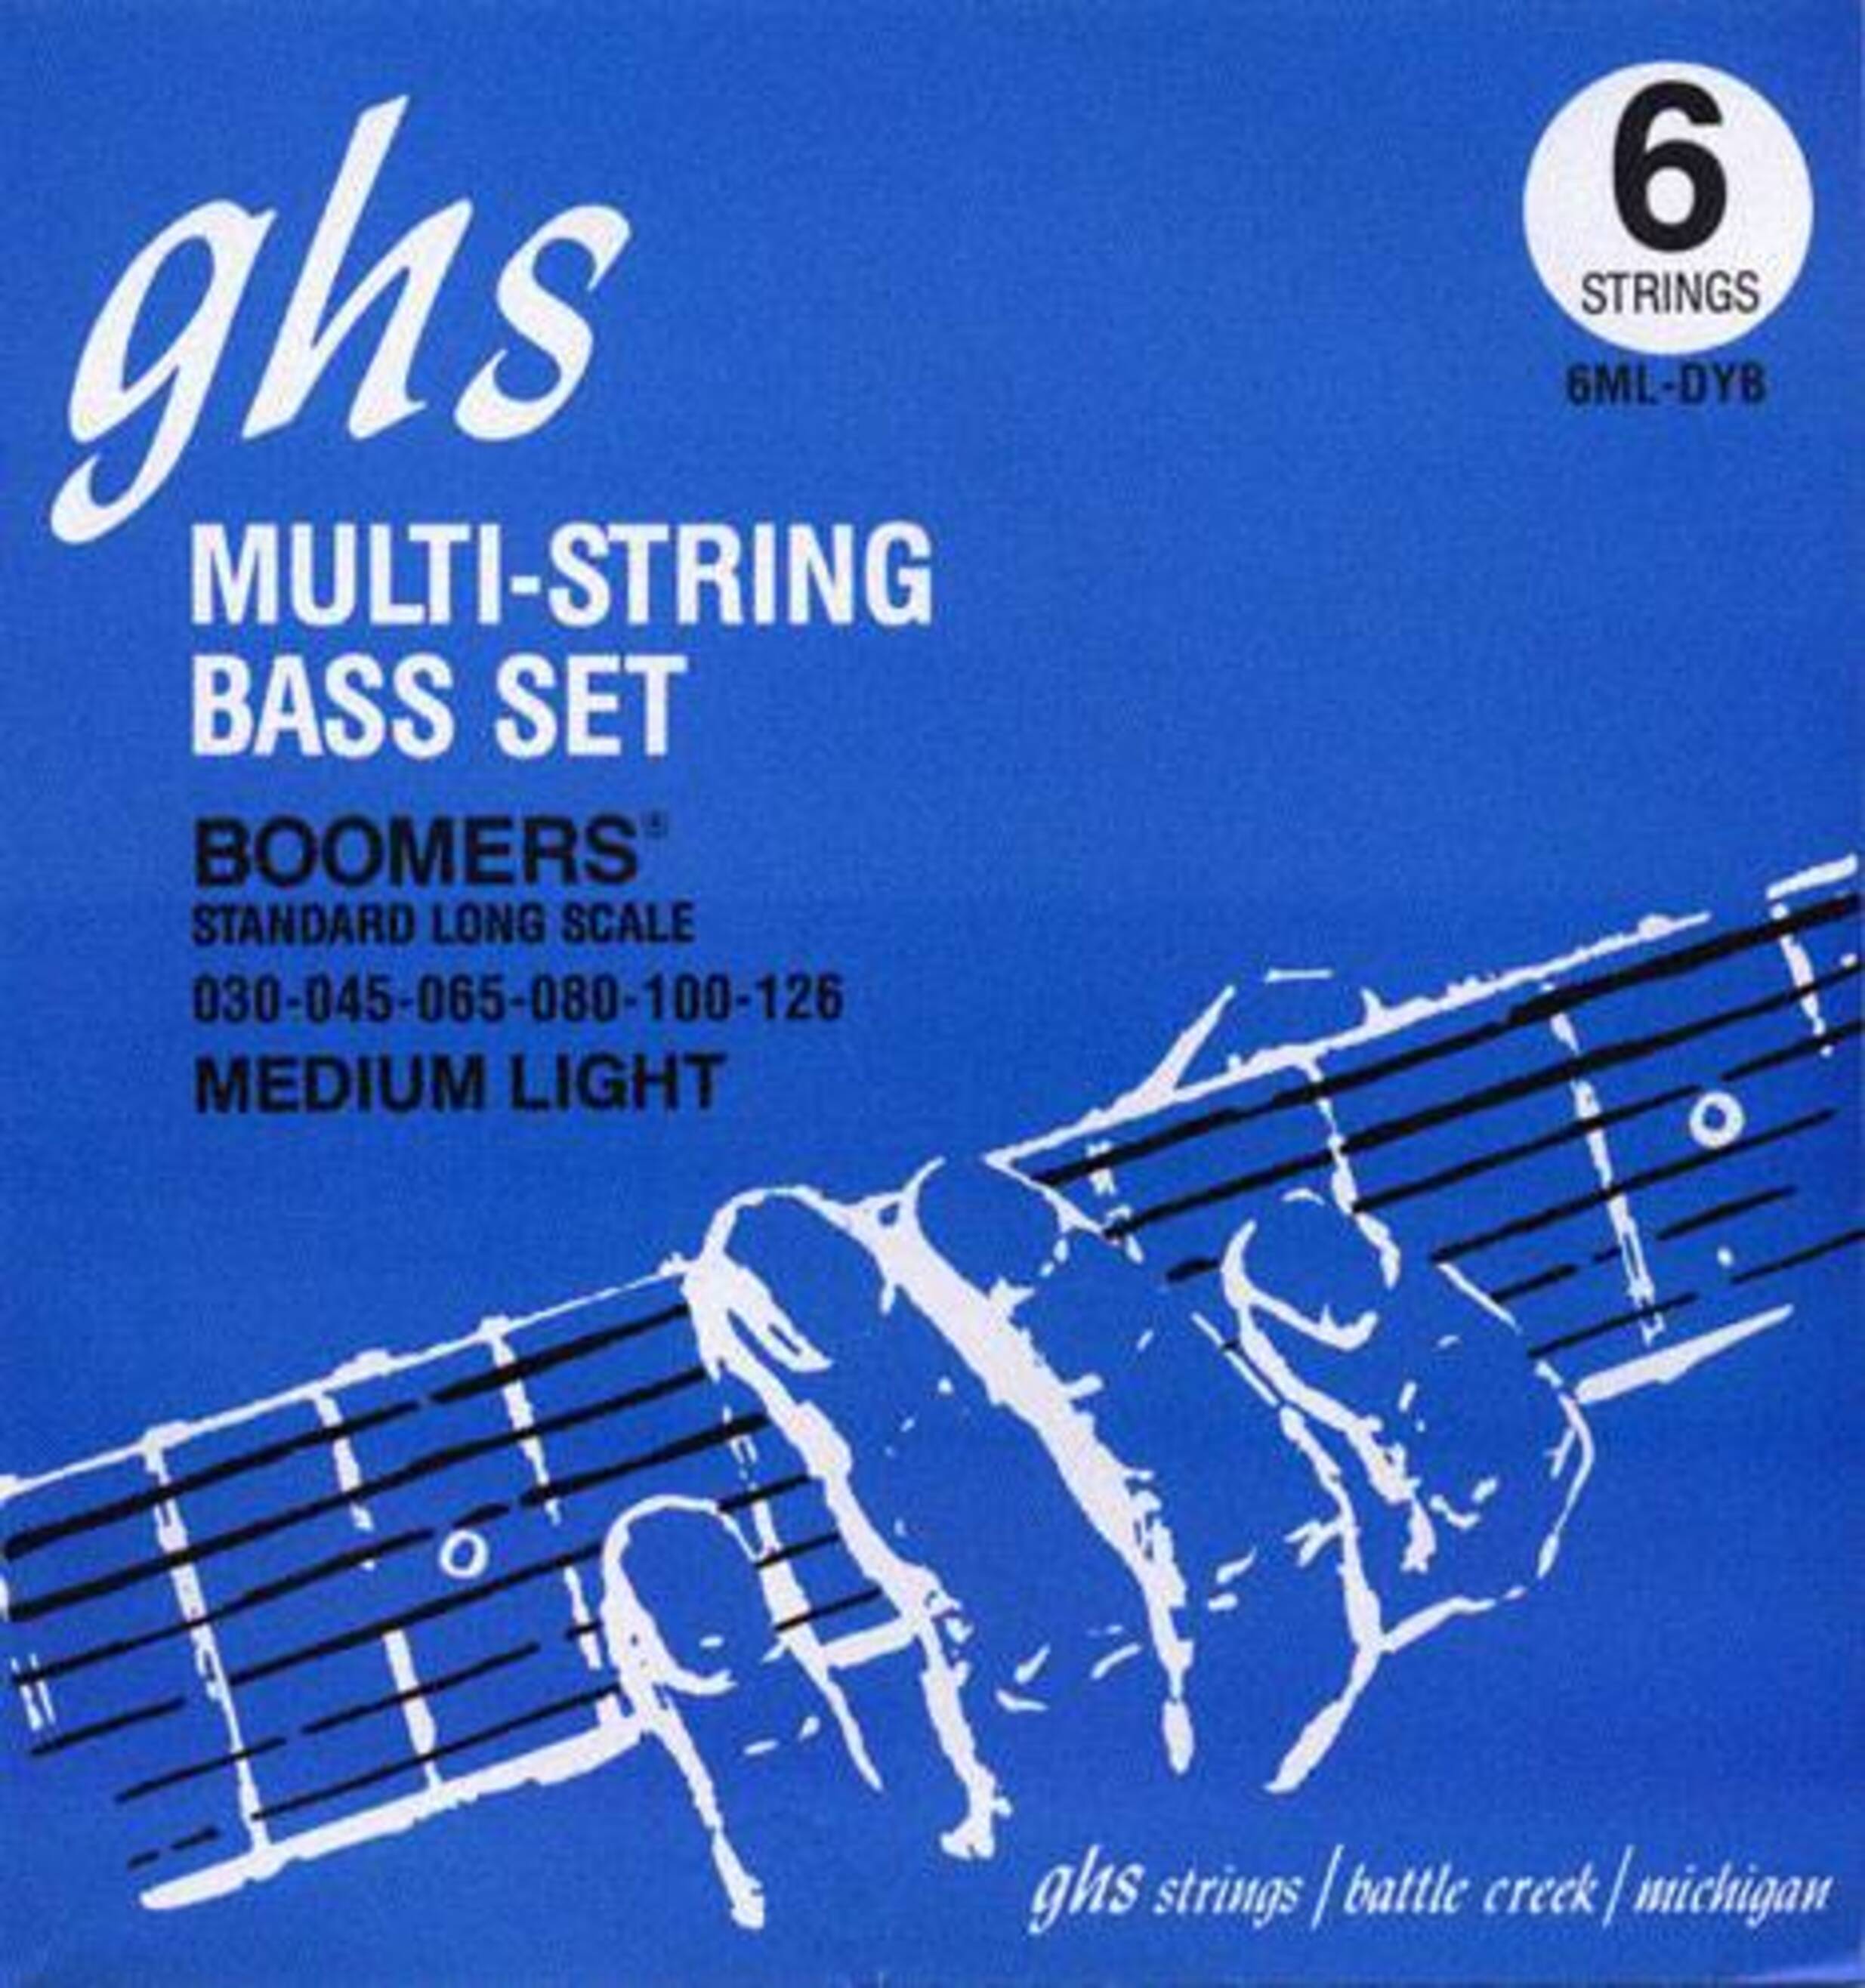 Струны GHS Strings 6ML-DYB